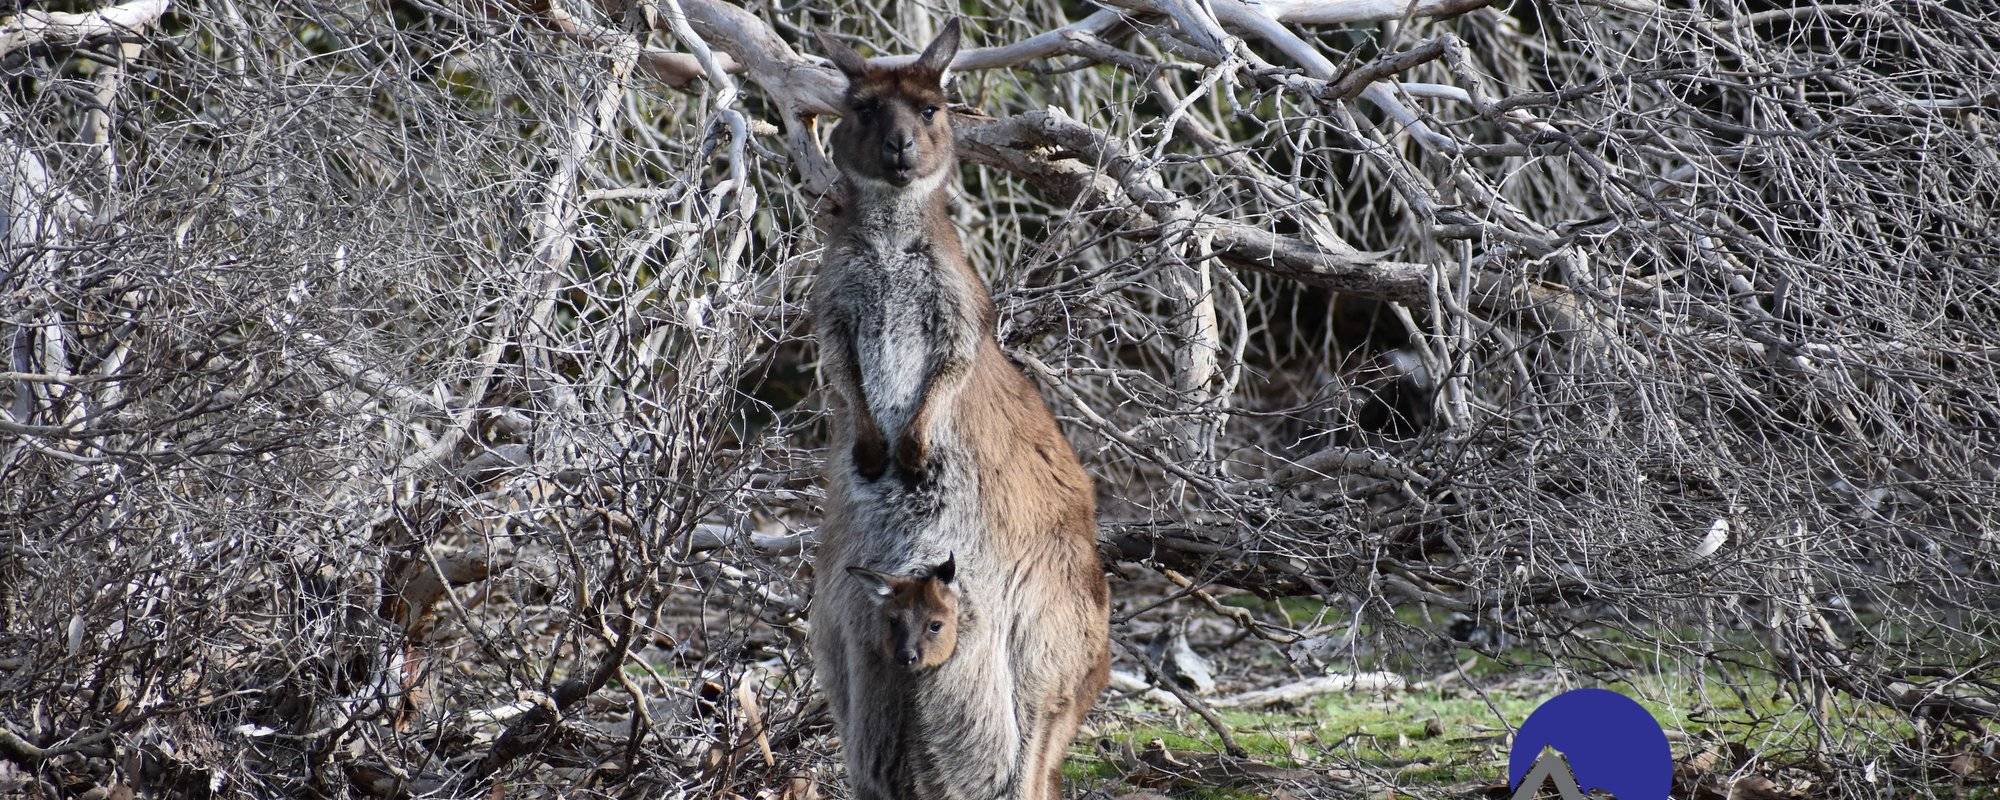 Kangaroo Island Kangaroos - Kangaroo Island Journey #8